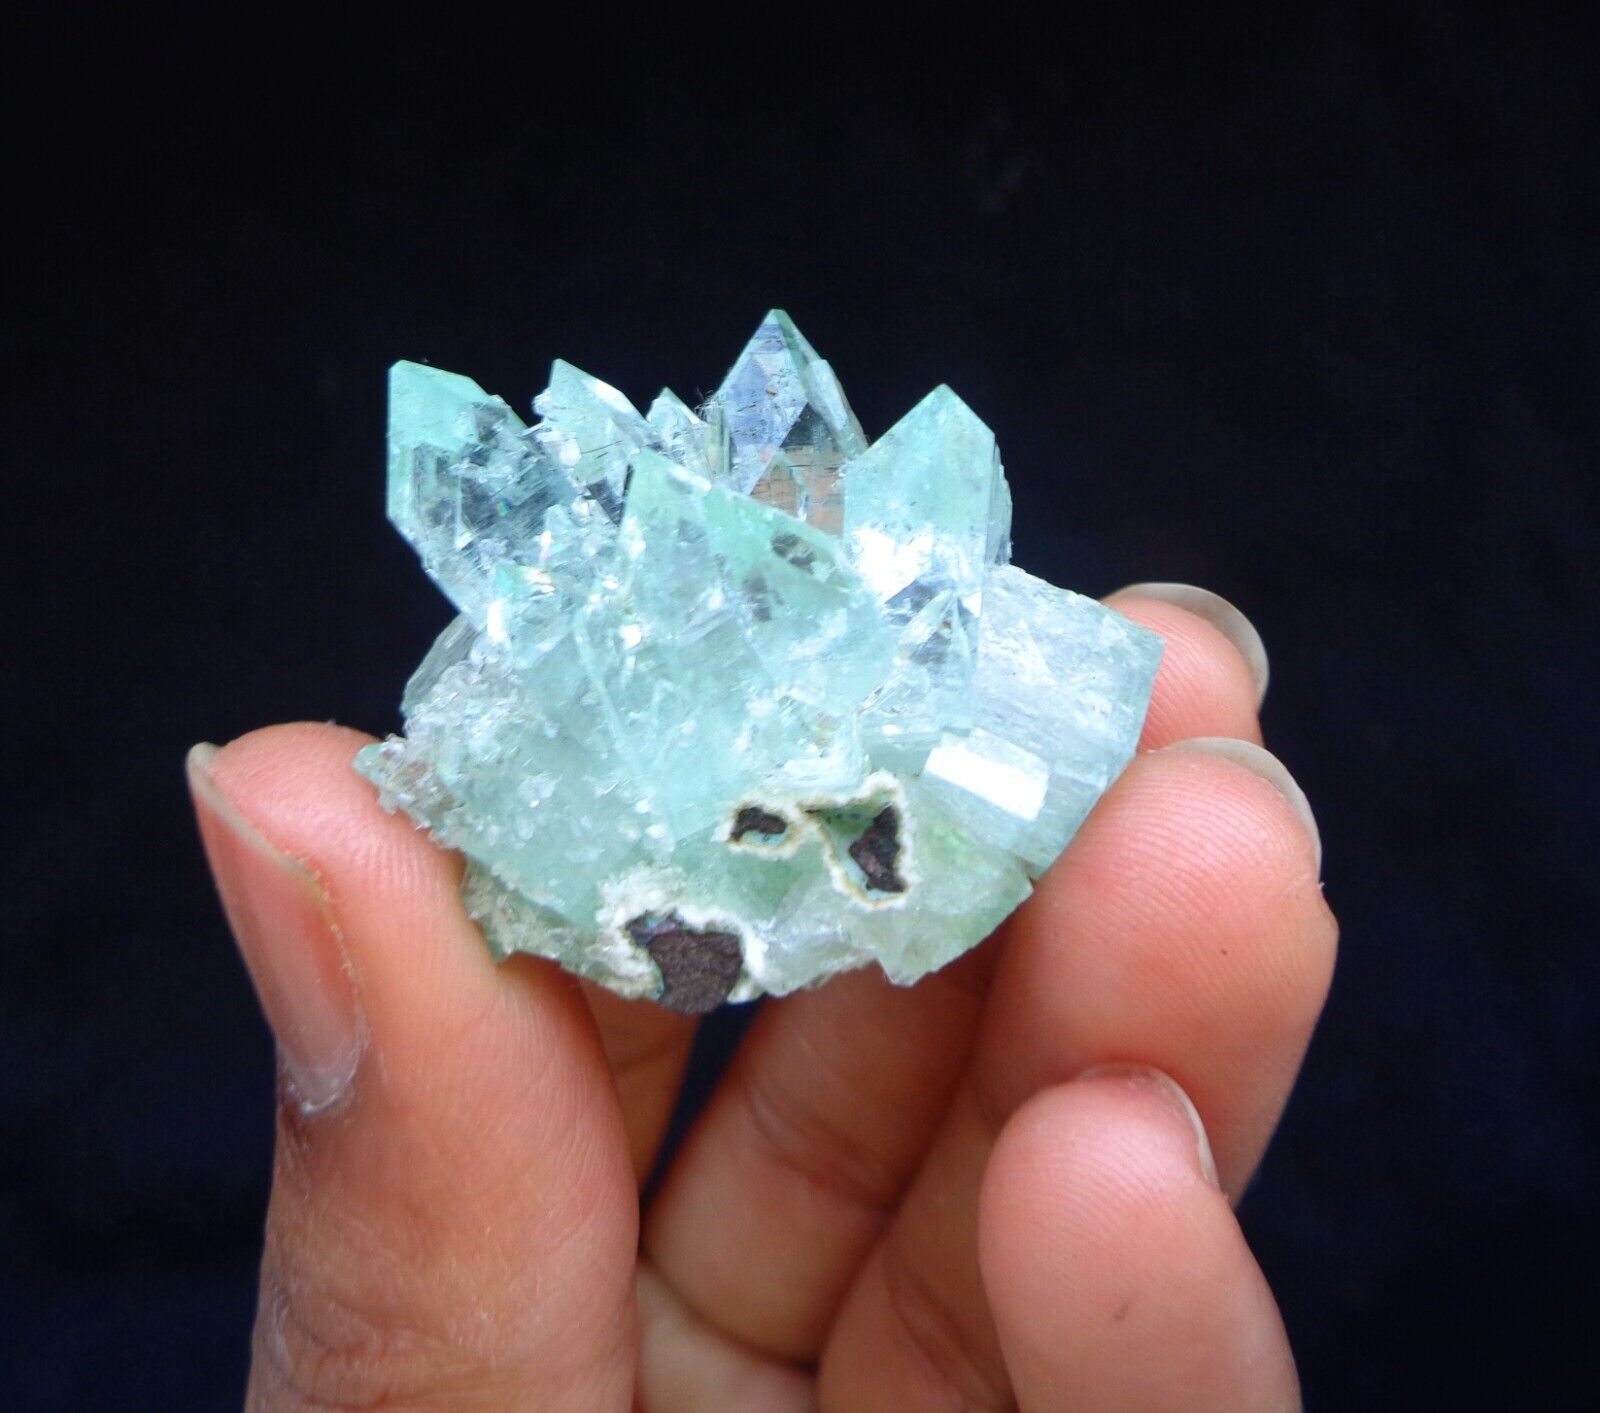 Green Apophyllite Crystals Minerals Specimen